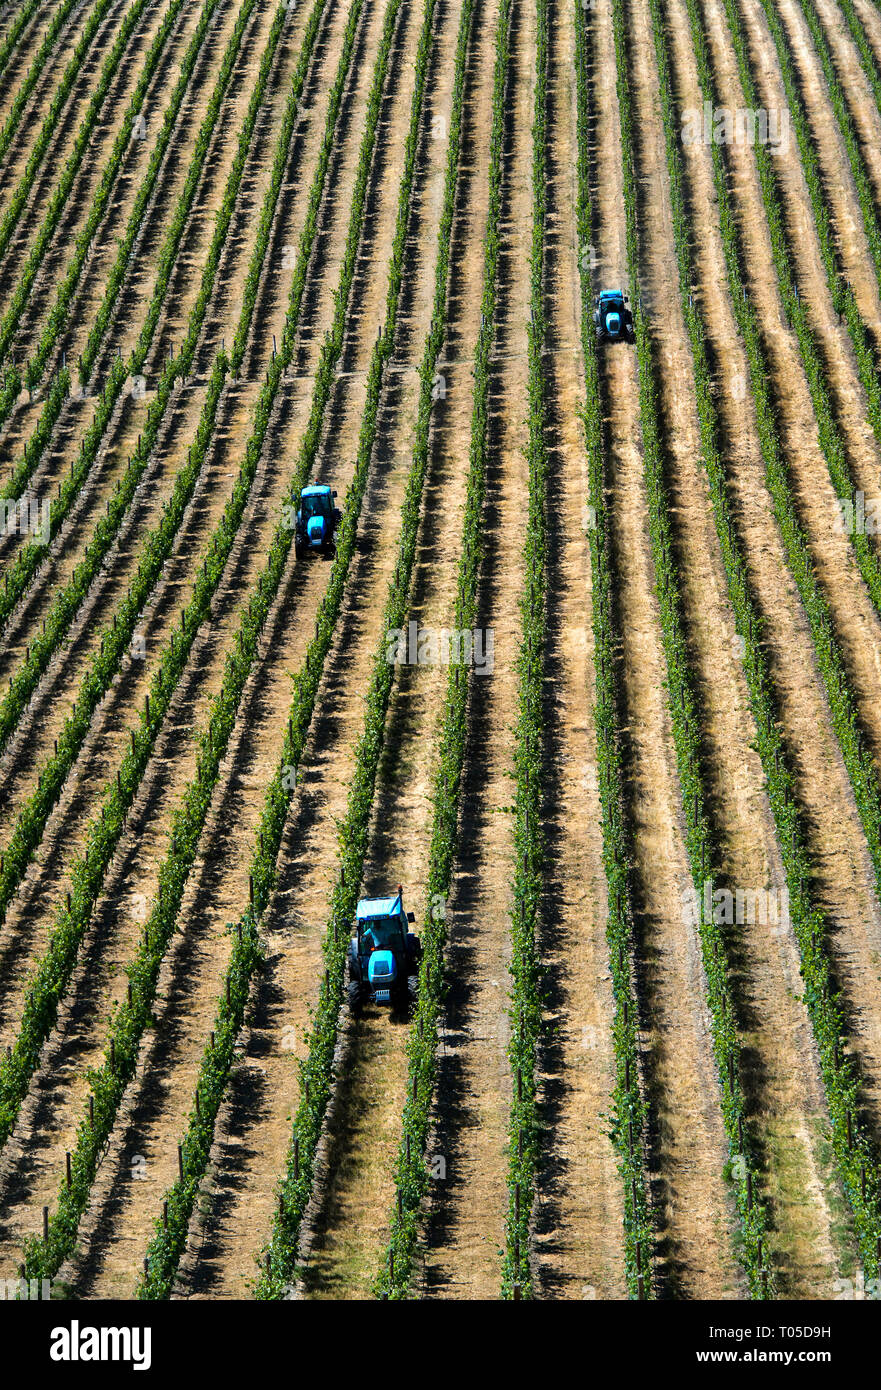 Le travail sur le terrain dans une plantation mécanisée avec vignes verticale à l'aide de la technique de culture Vinha ao alto, Sao Joao de Pesqueira, Douro, Portugal Banque D'Images